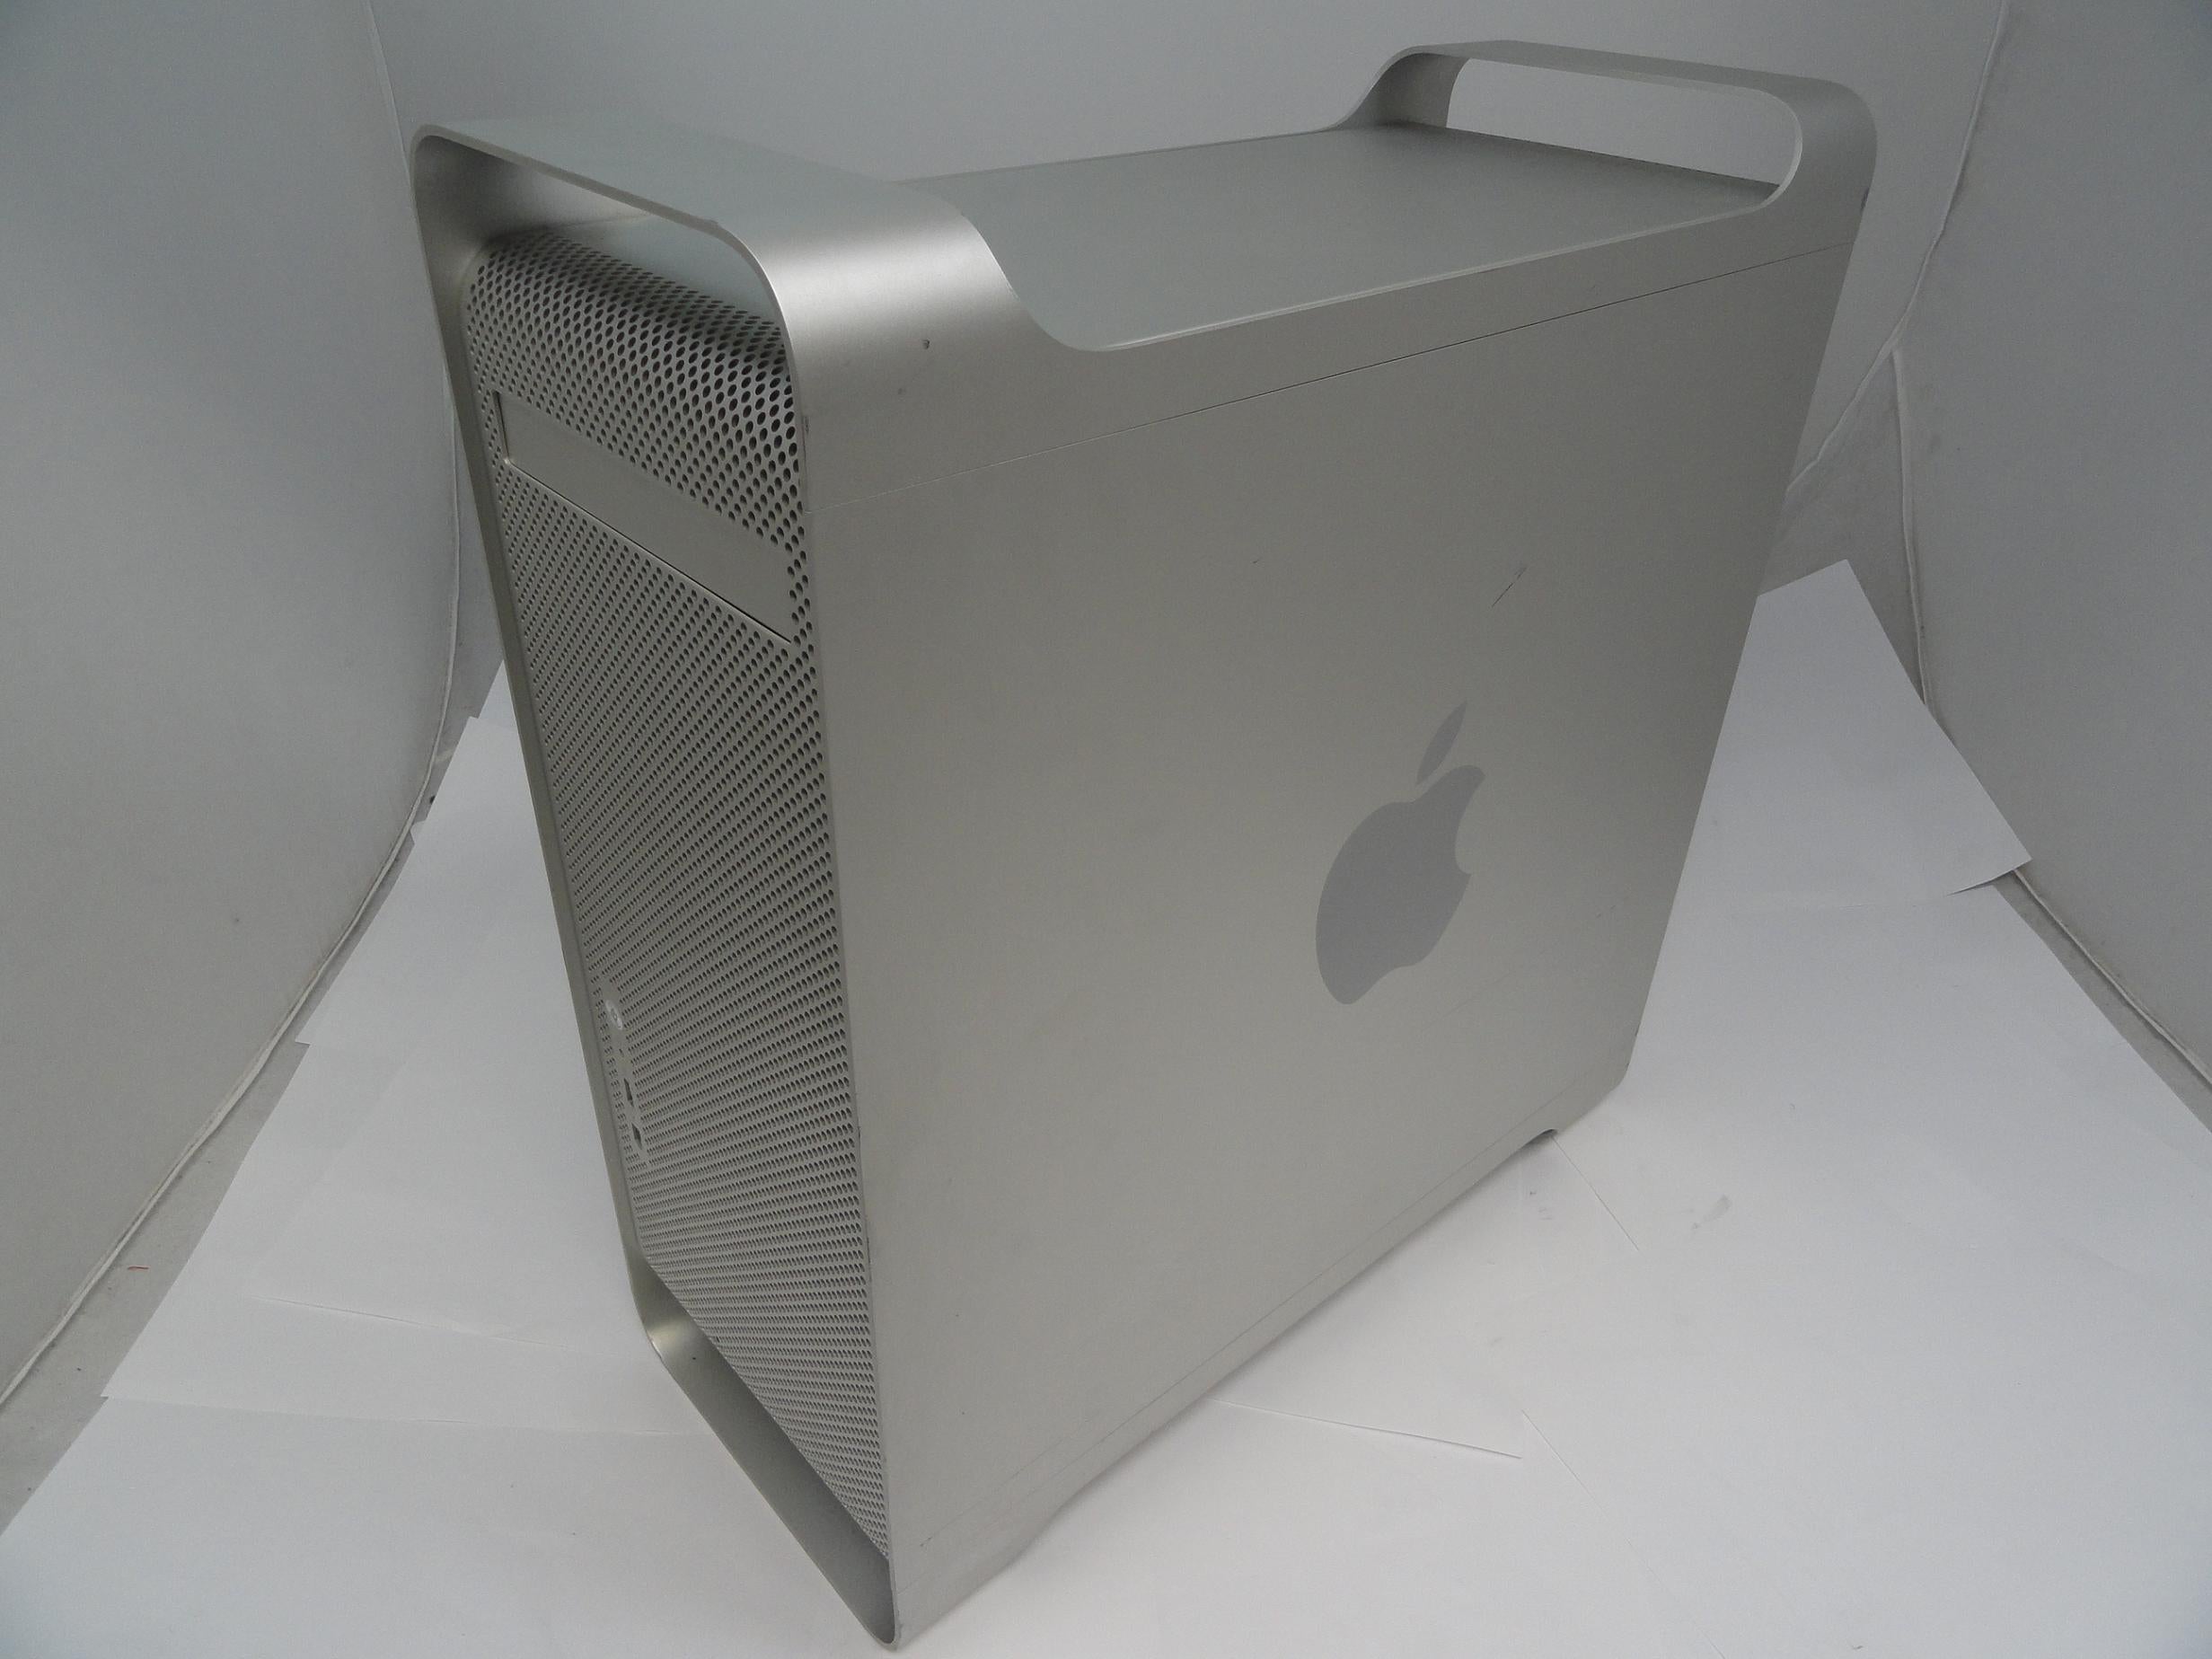 PR16213_M9591LL/A_Apple Power Mac G5 2.3GHz CPU 4.5Gb RAM 250Gb HDD - Image3